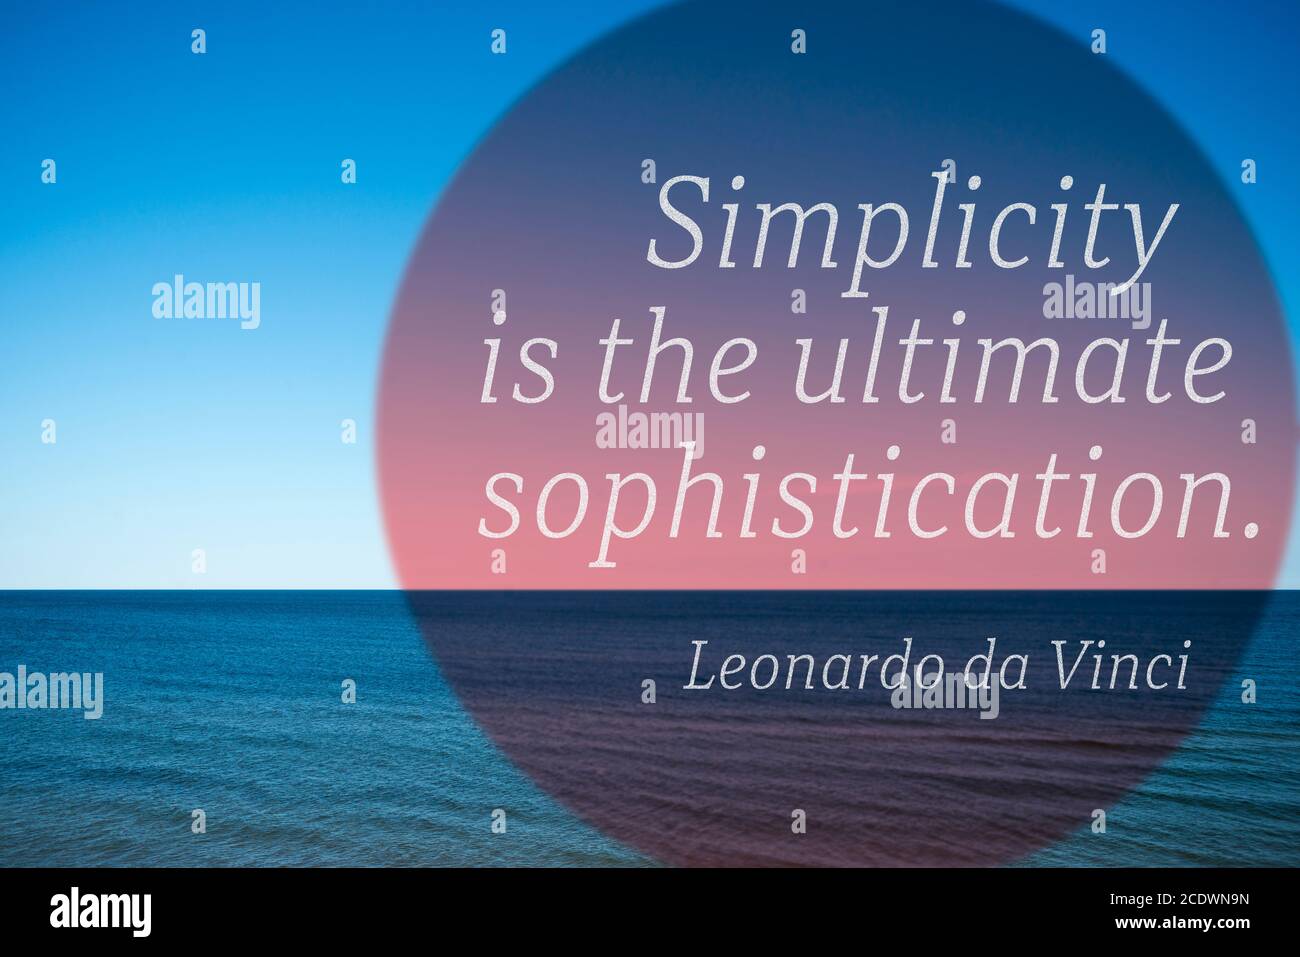 La simplicidad es la sofisticación definitiva - cita del antiguo artista italiano Leonardo da Vinci impreso sobre la foto con un tranquilo paisaje marino Foto de stock